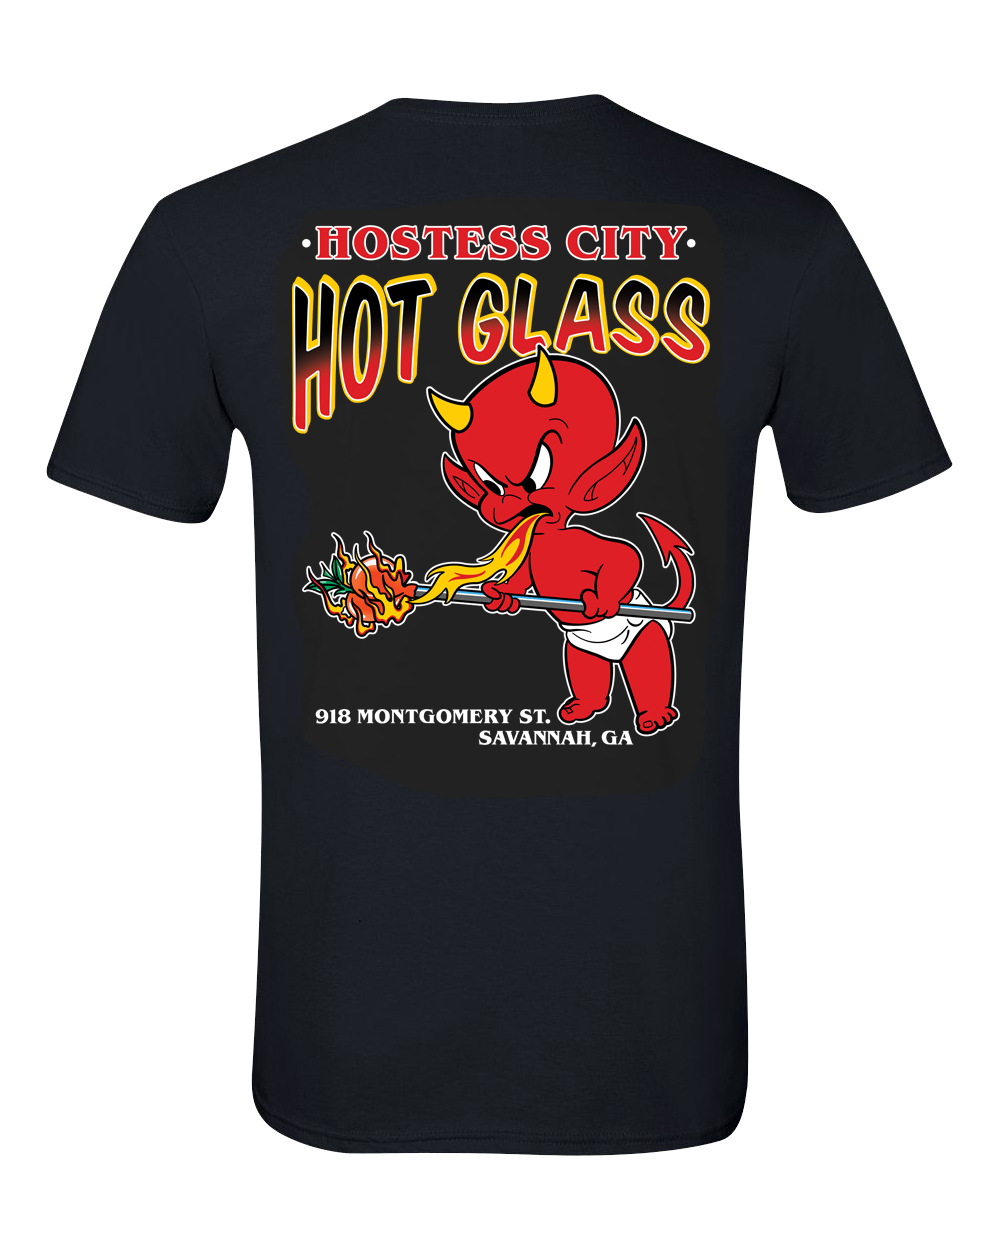 Hostess City Hot Glass “Hot Stuff” unisex t-shirt